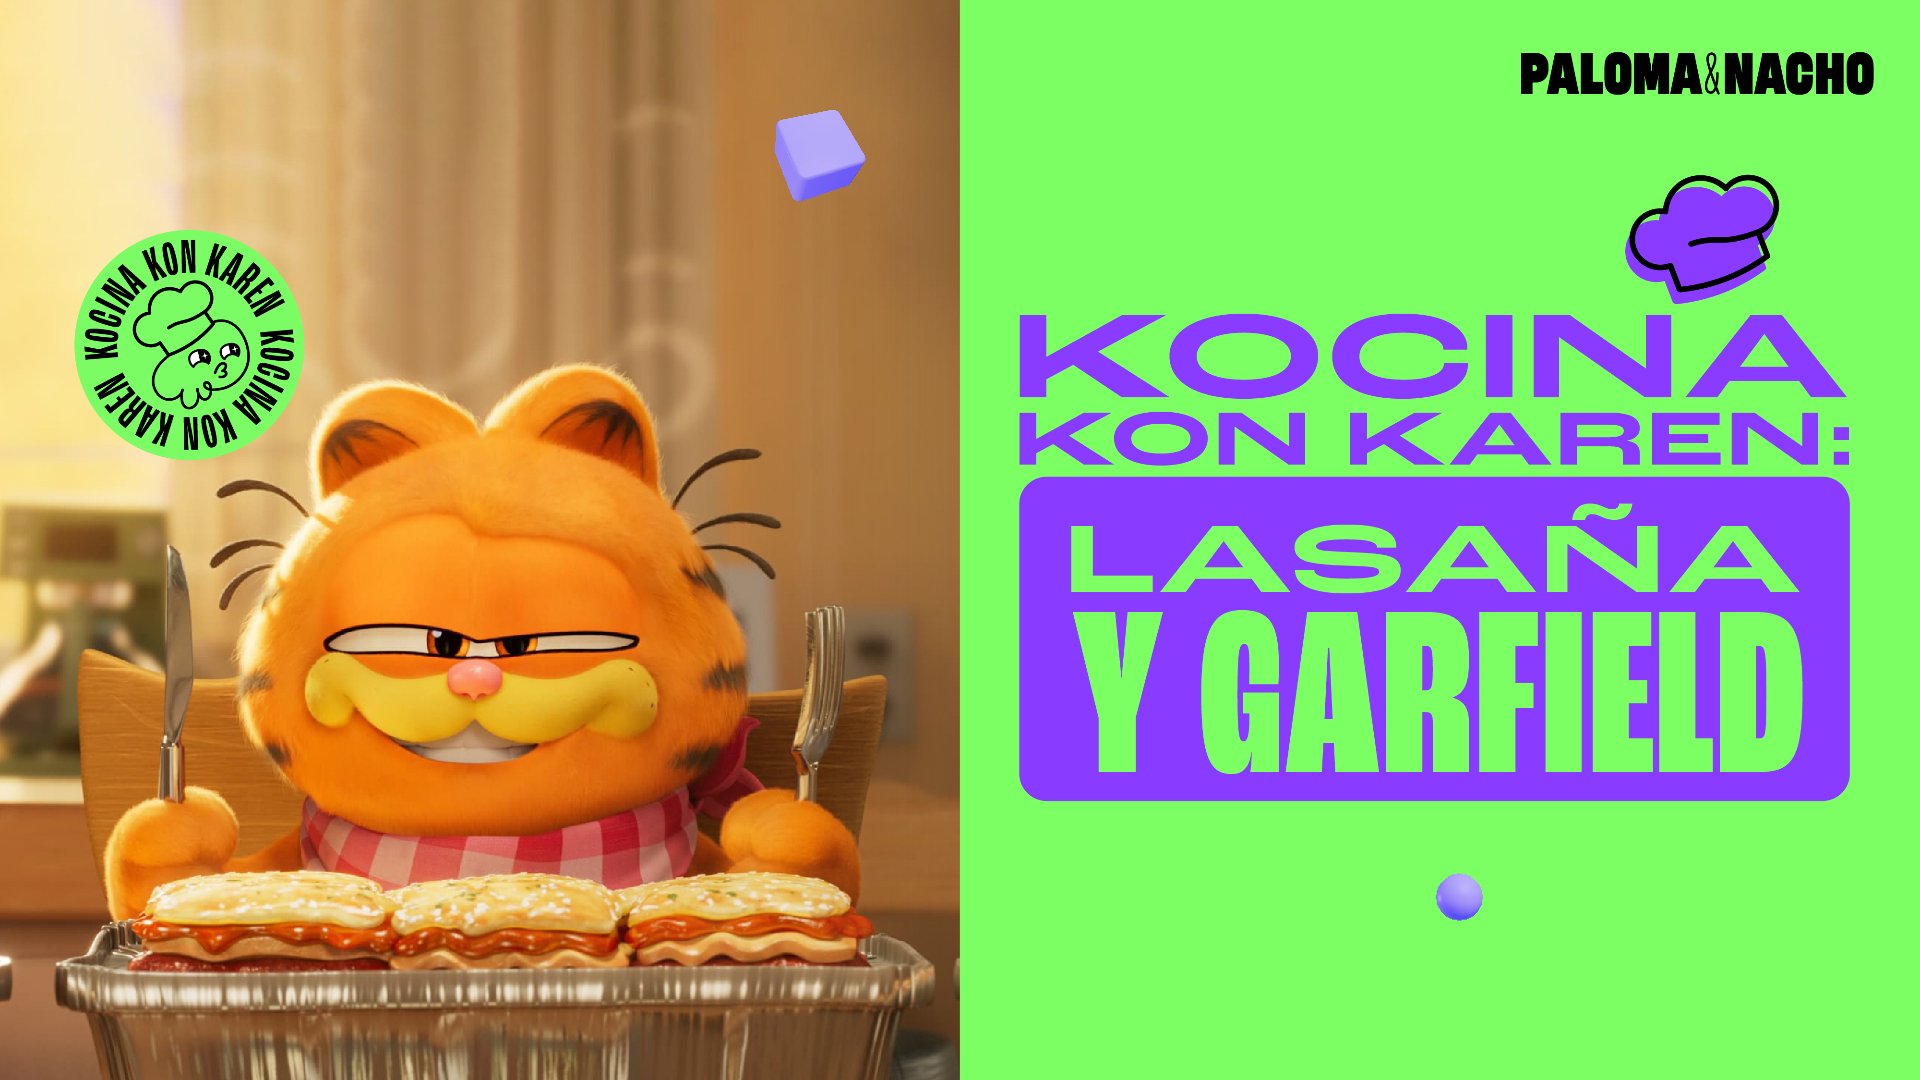 Cocina Lasaña con Garfield